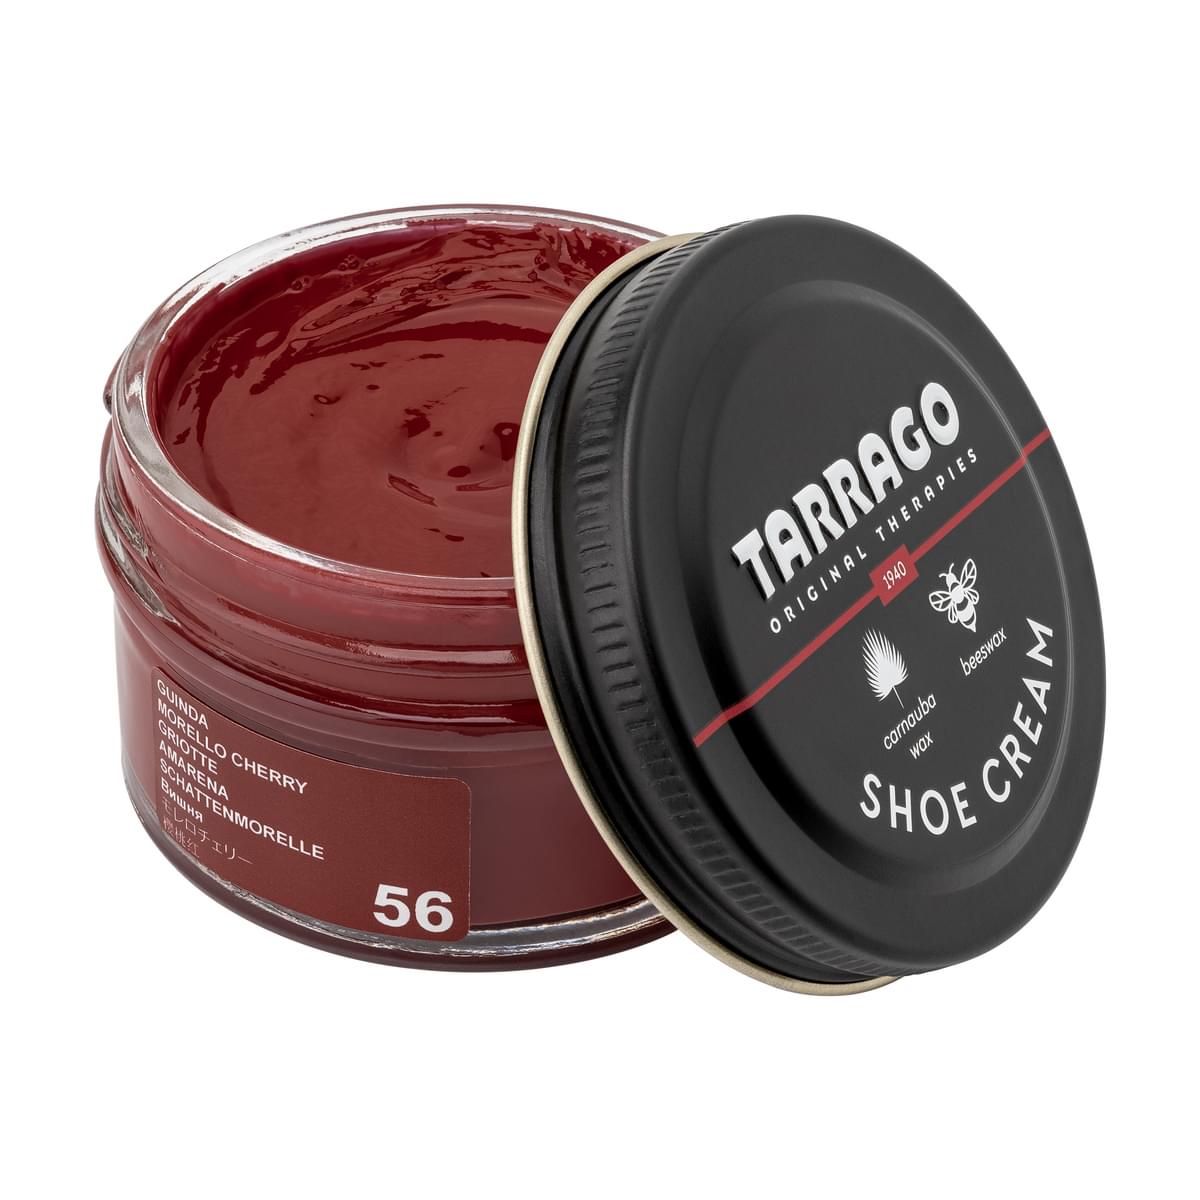 Tarrago Shoe Cream  - Morello Cherry - 56